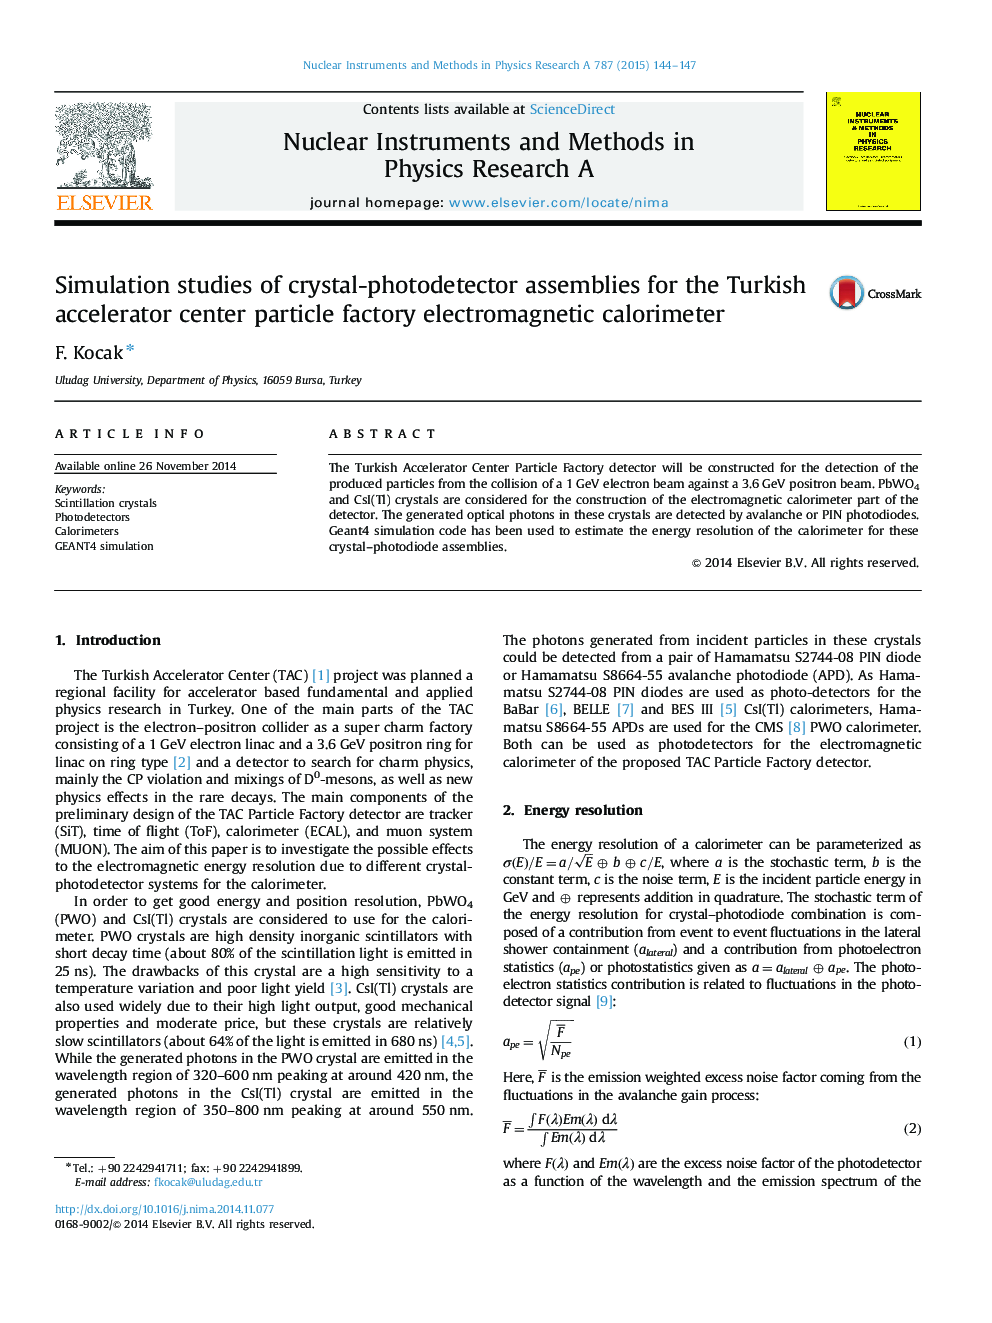 مطالعات شبیه سازی مجموعه های کریستال-فوتودتکرر برای مرکز الکترومغناطیسی کارخانه ذرات مغناطیسی ترکیه 